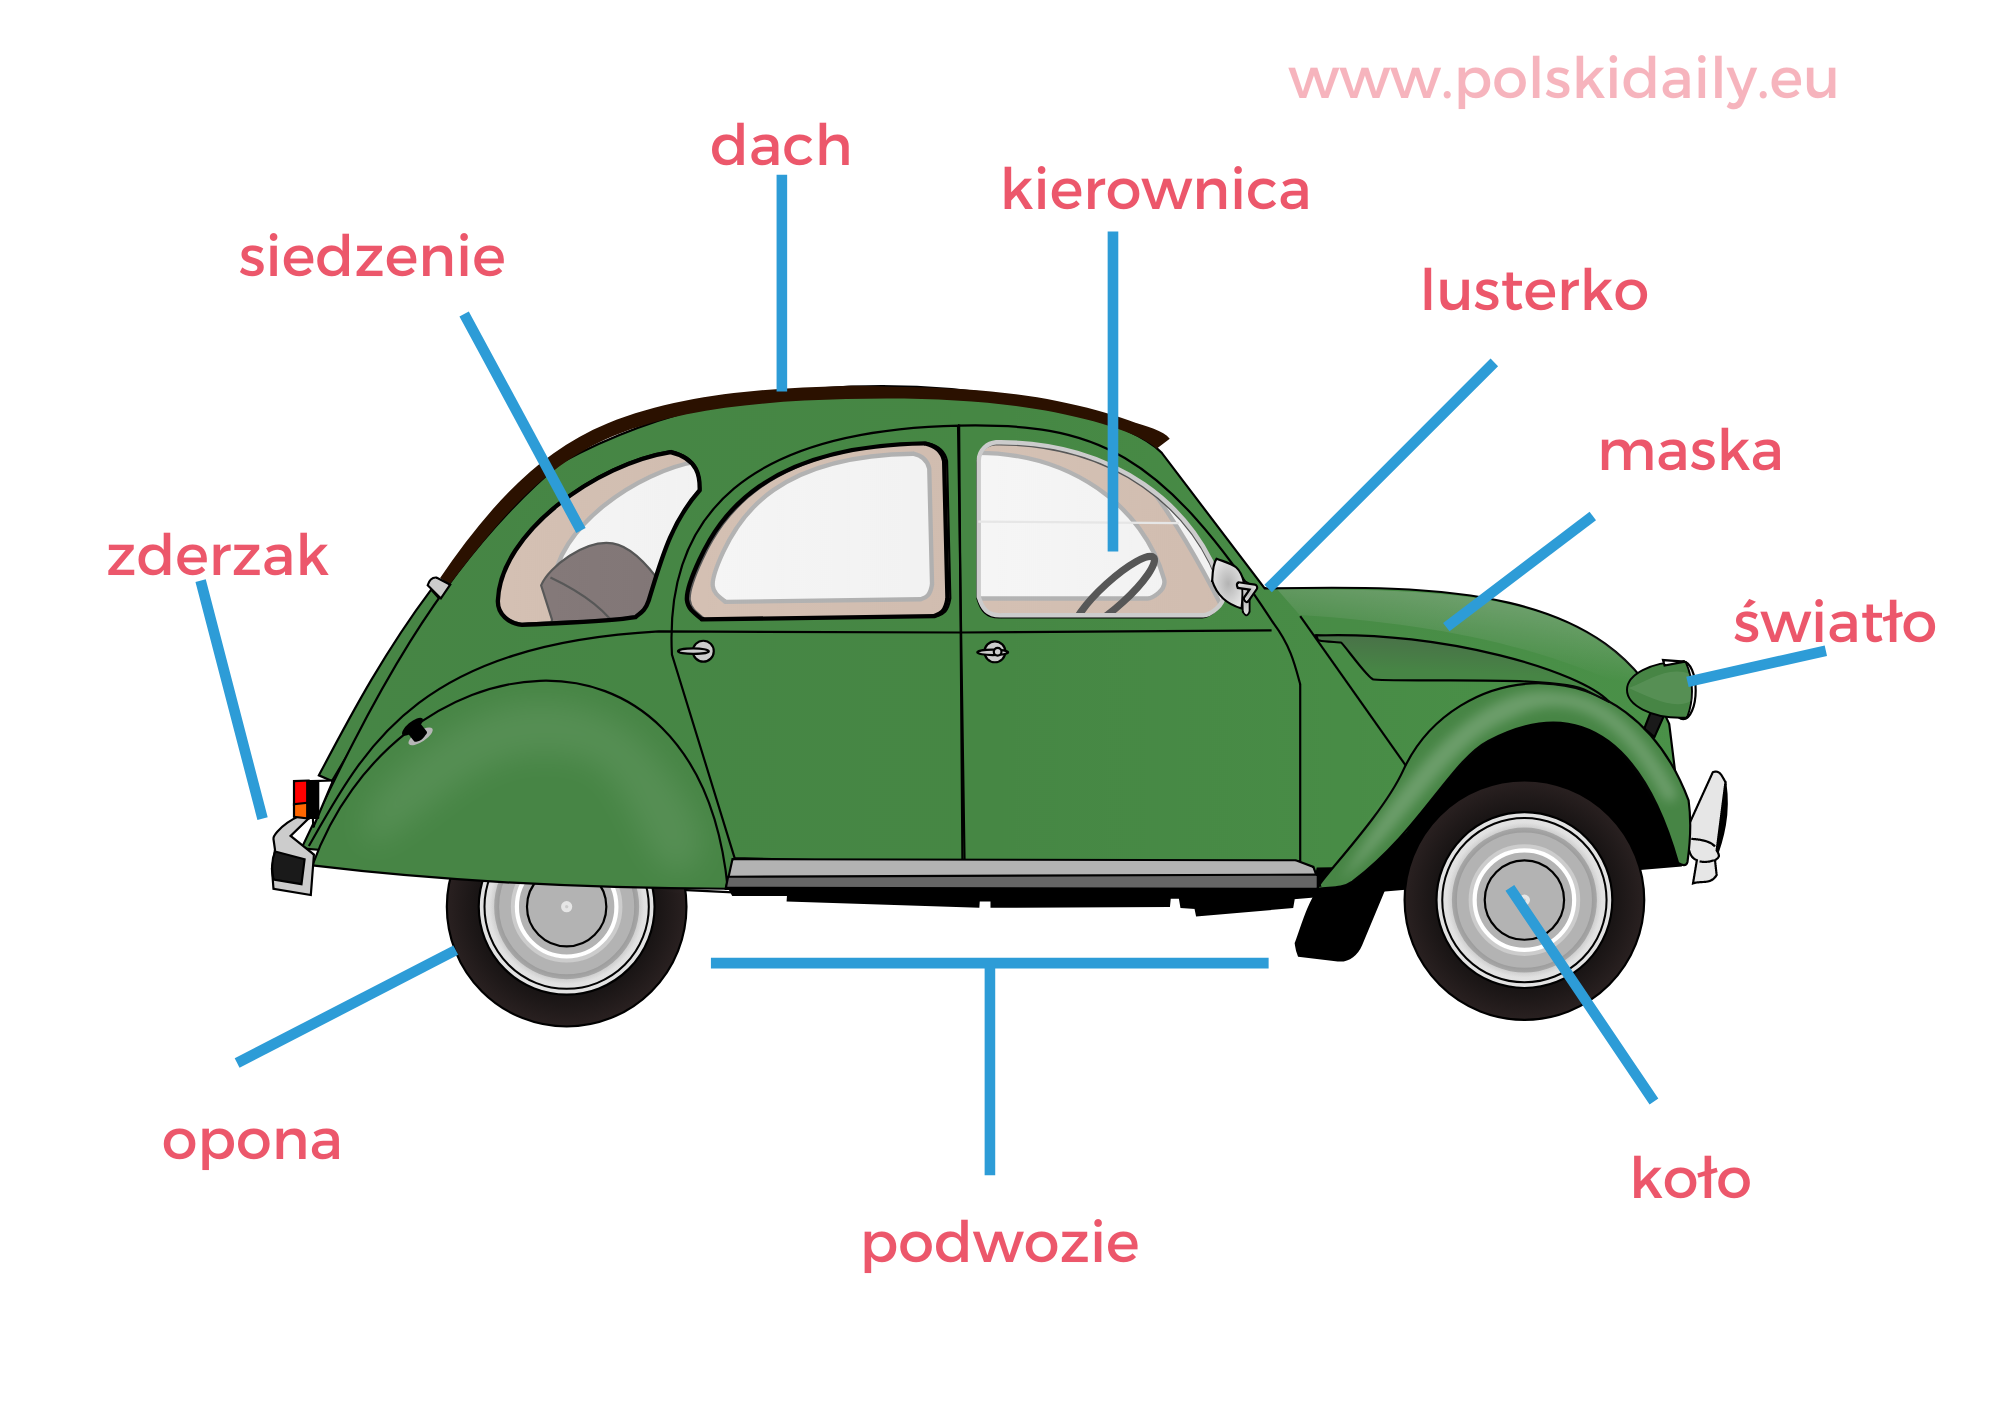 car in Polish